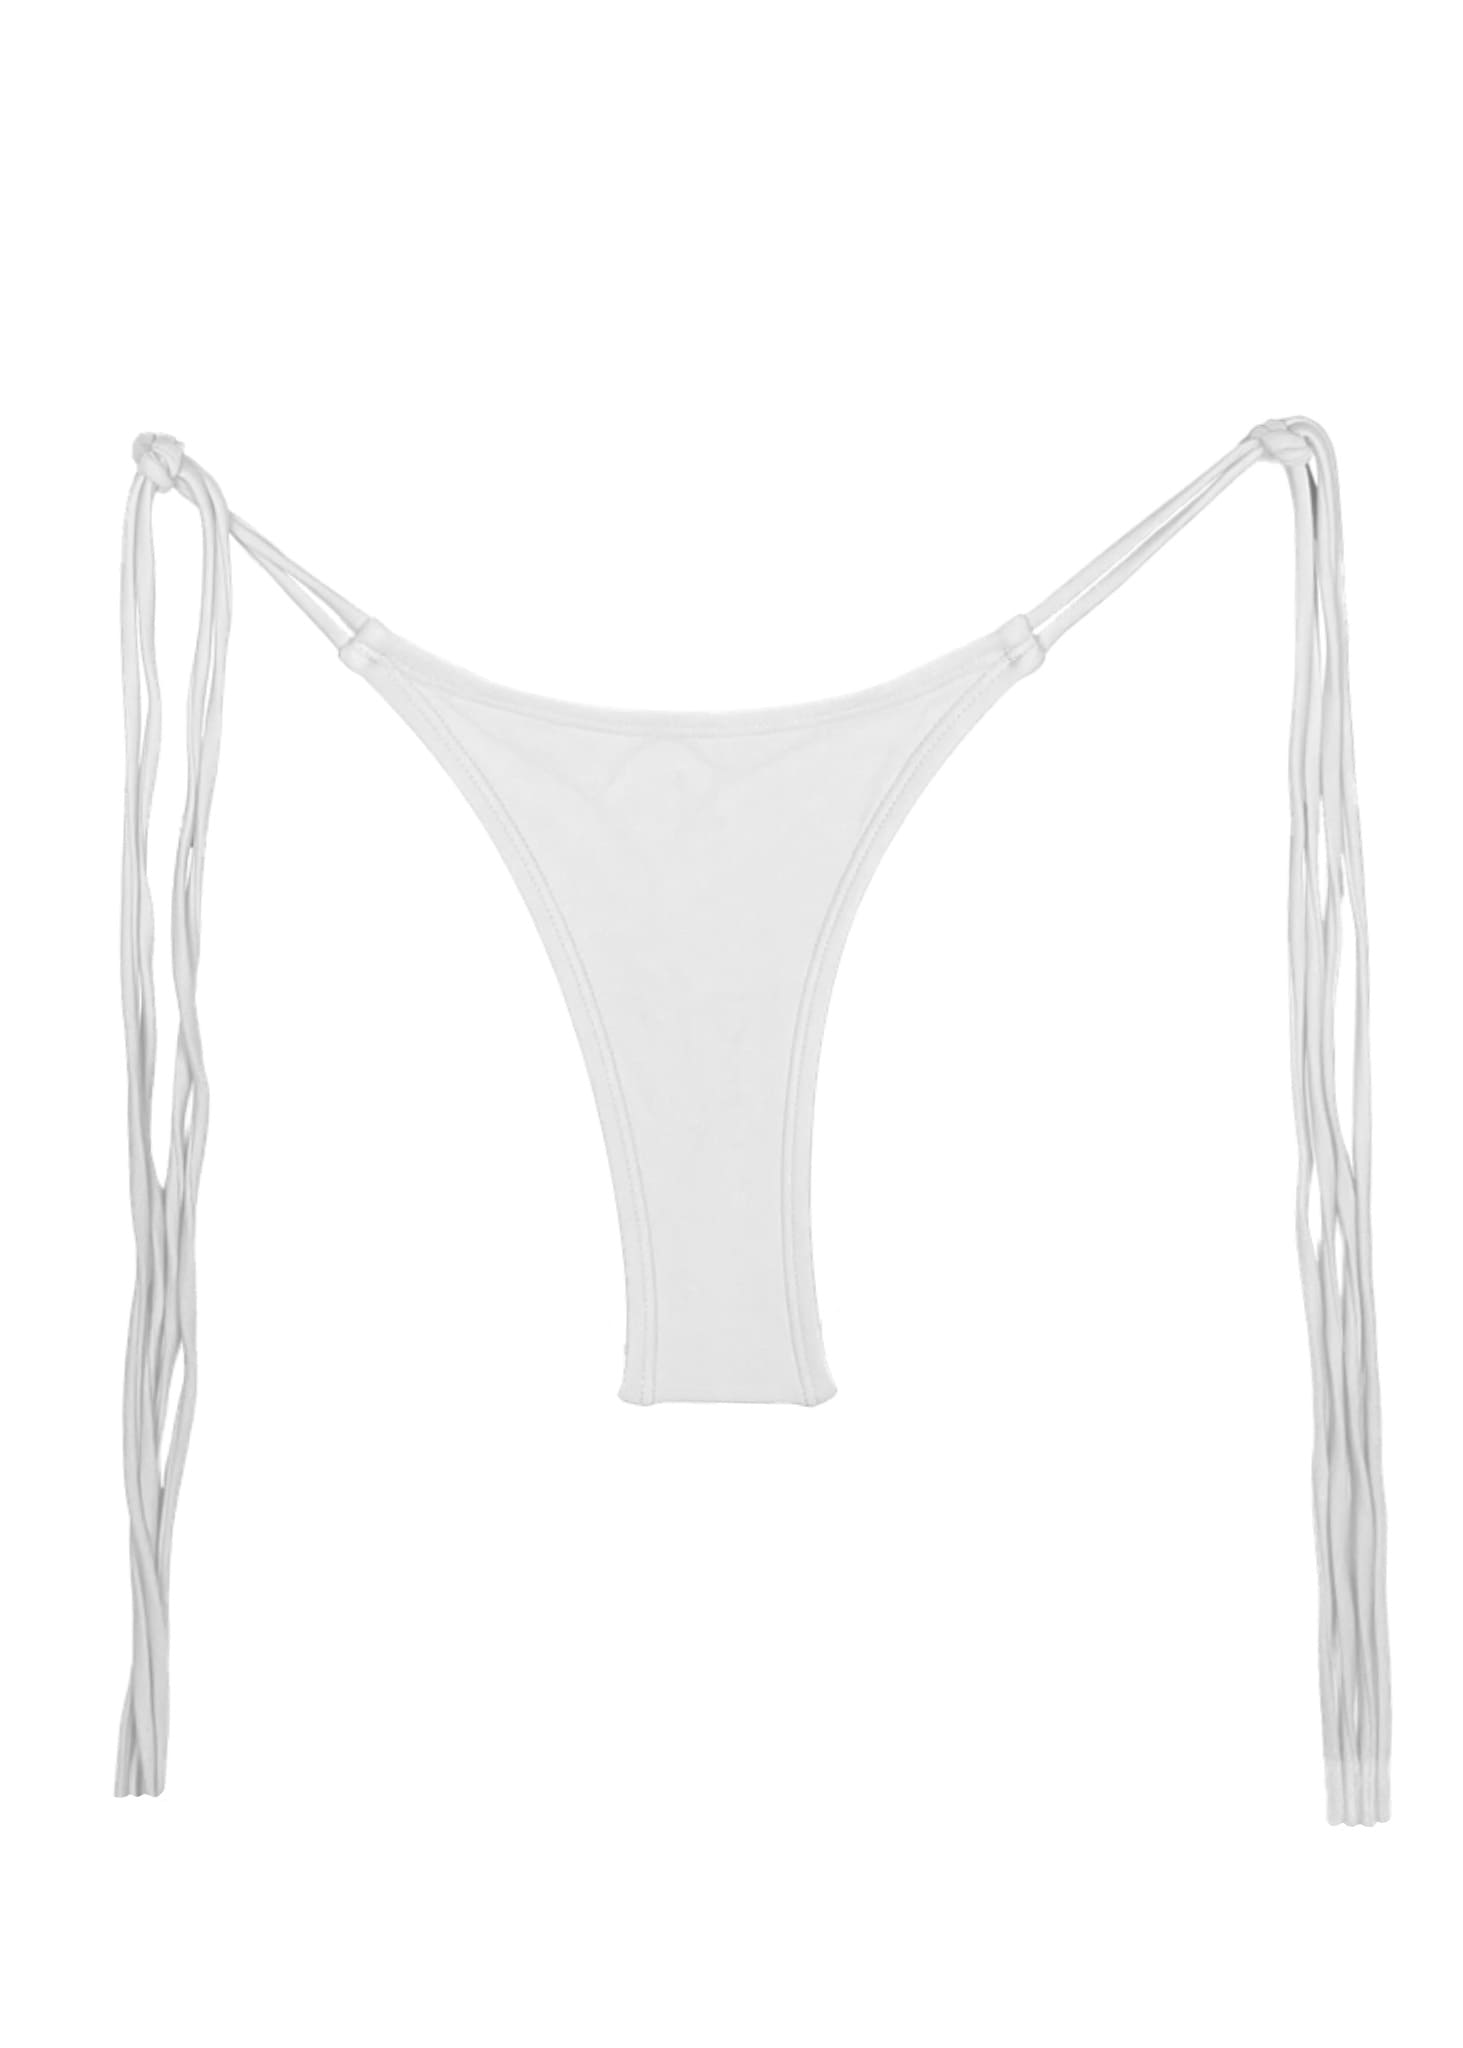 White Bikini Set, White Thong Swimsuits